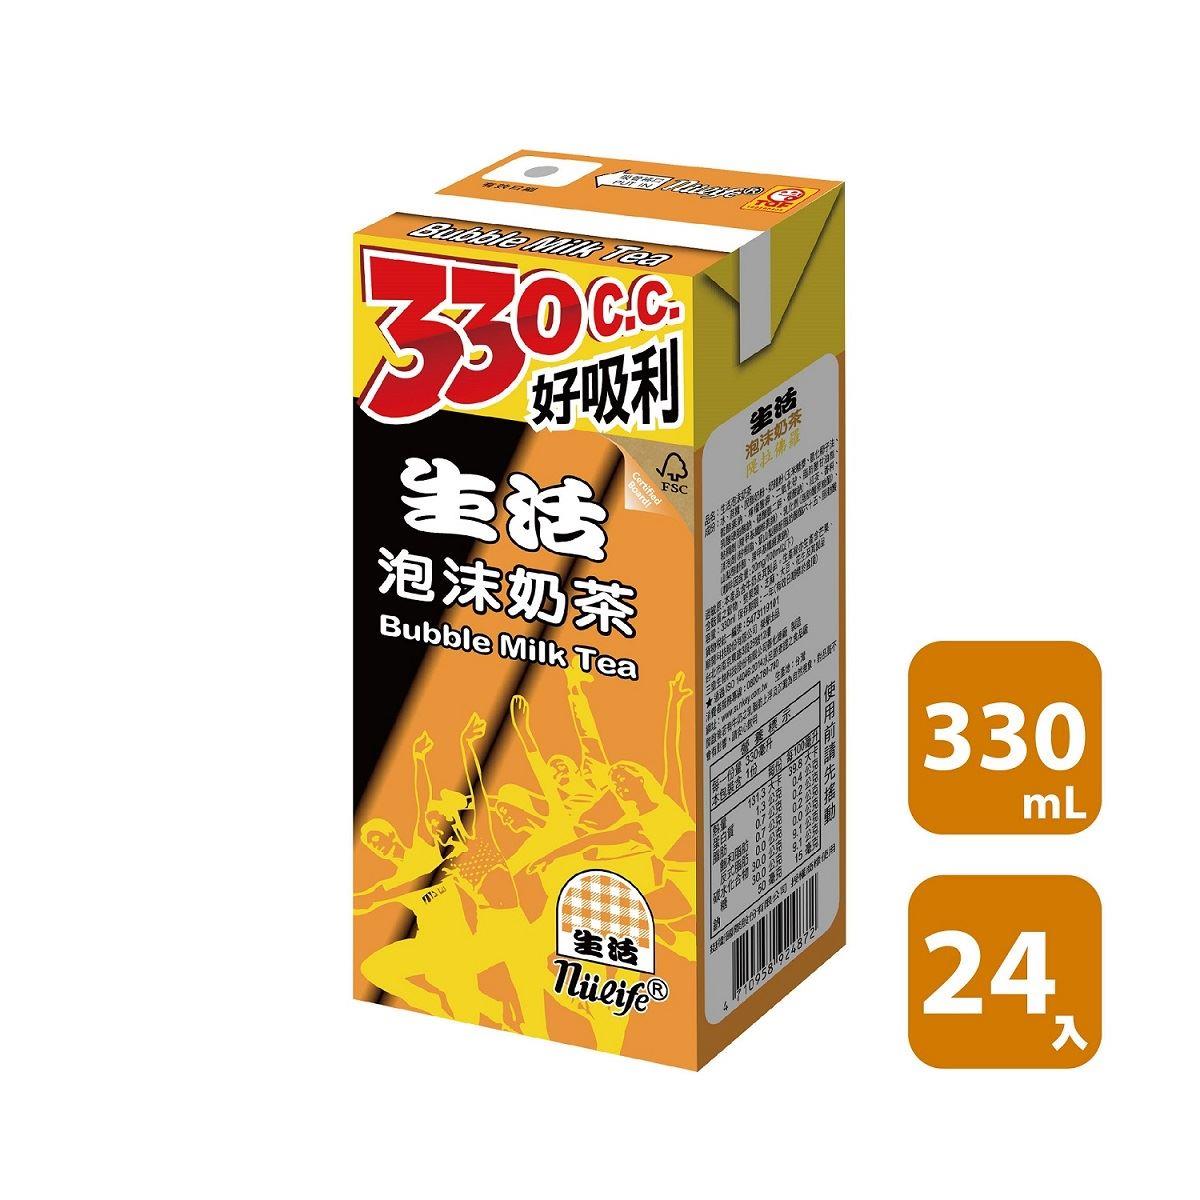 【生活】箱購生活泡沫奶茶330ml(330mlx24)